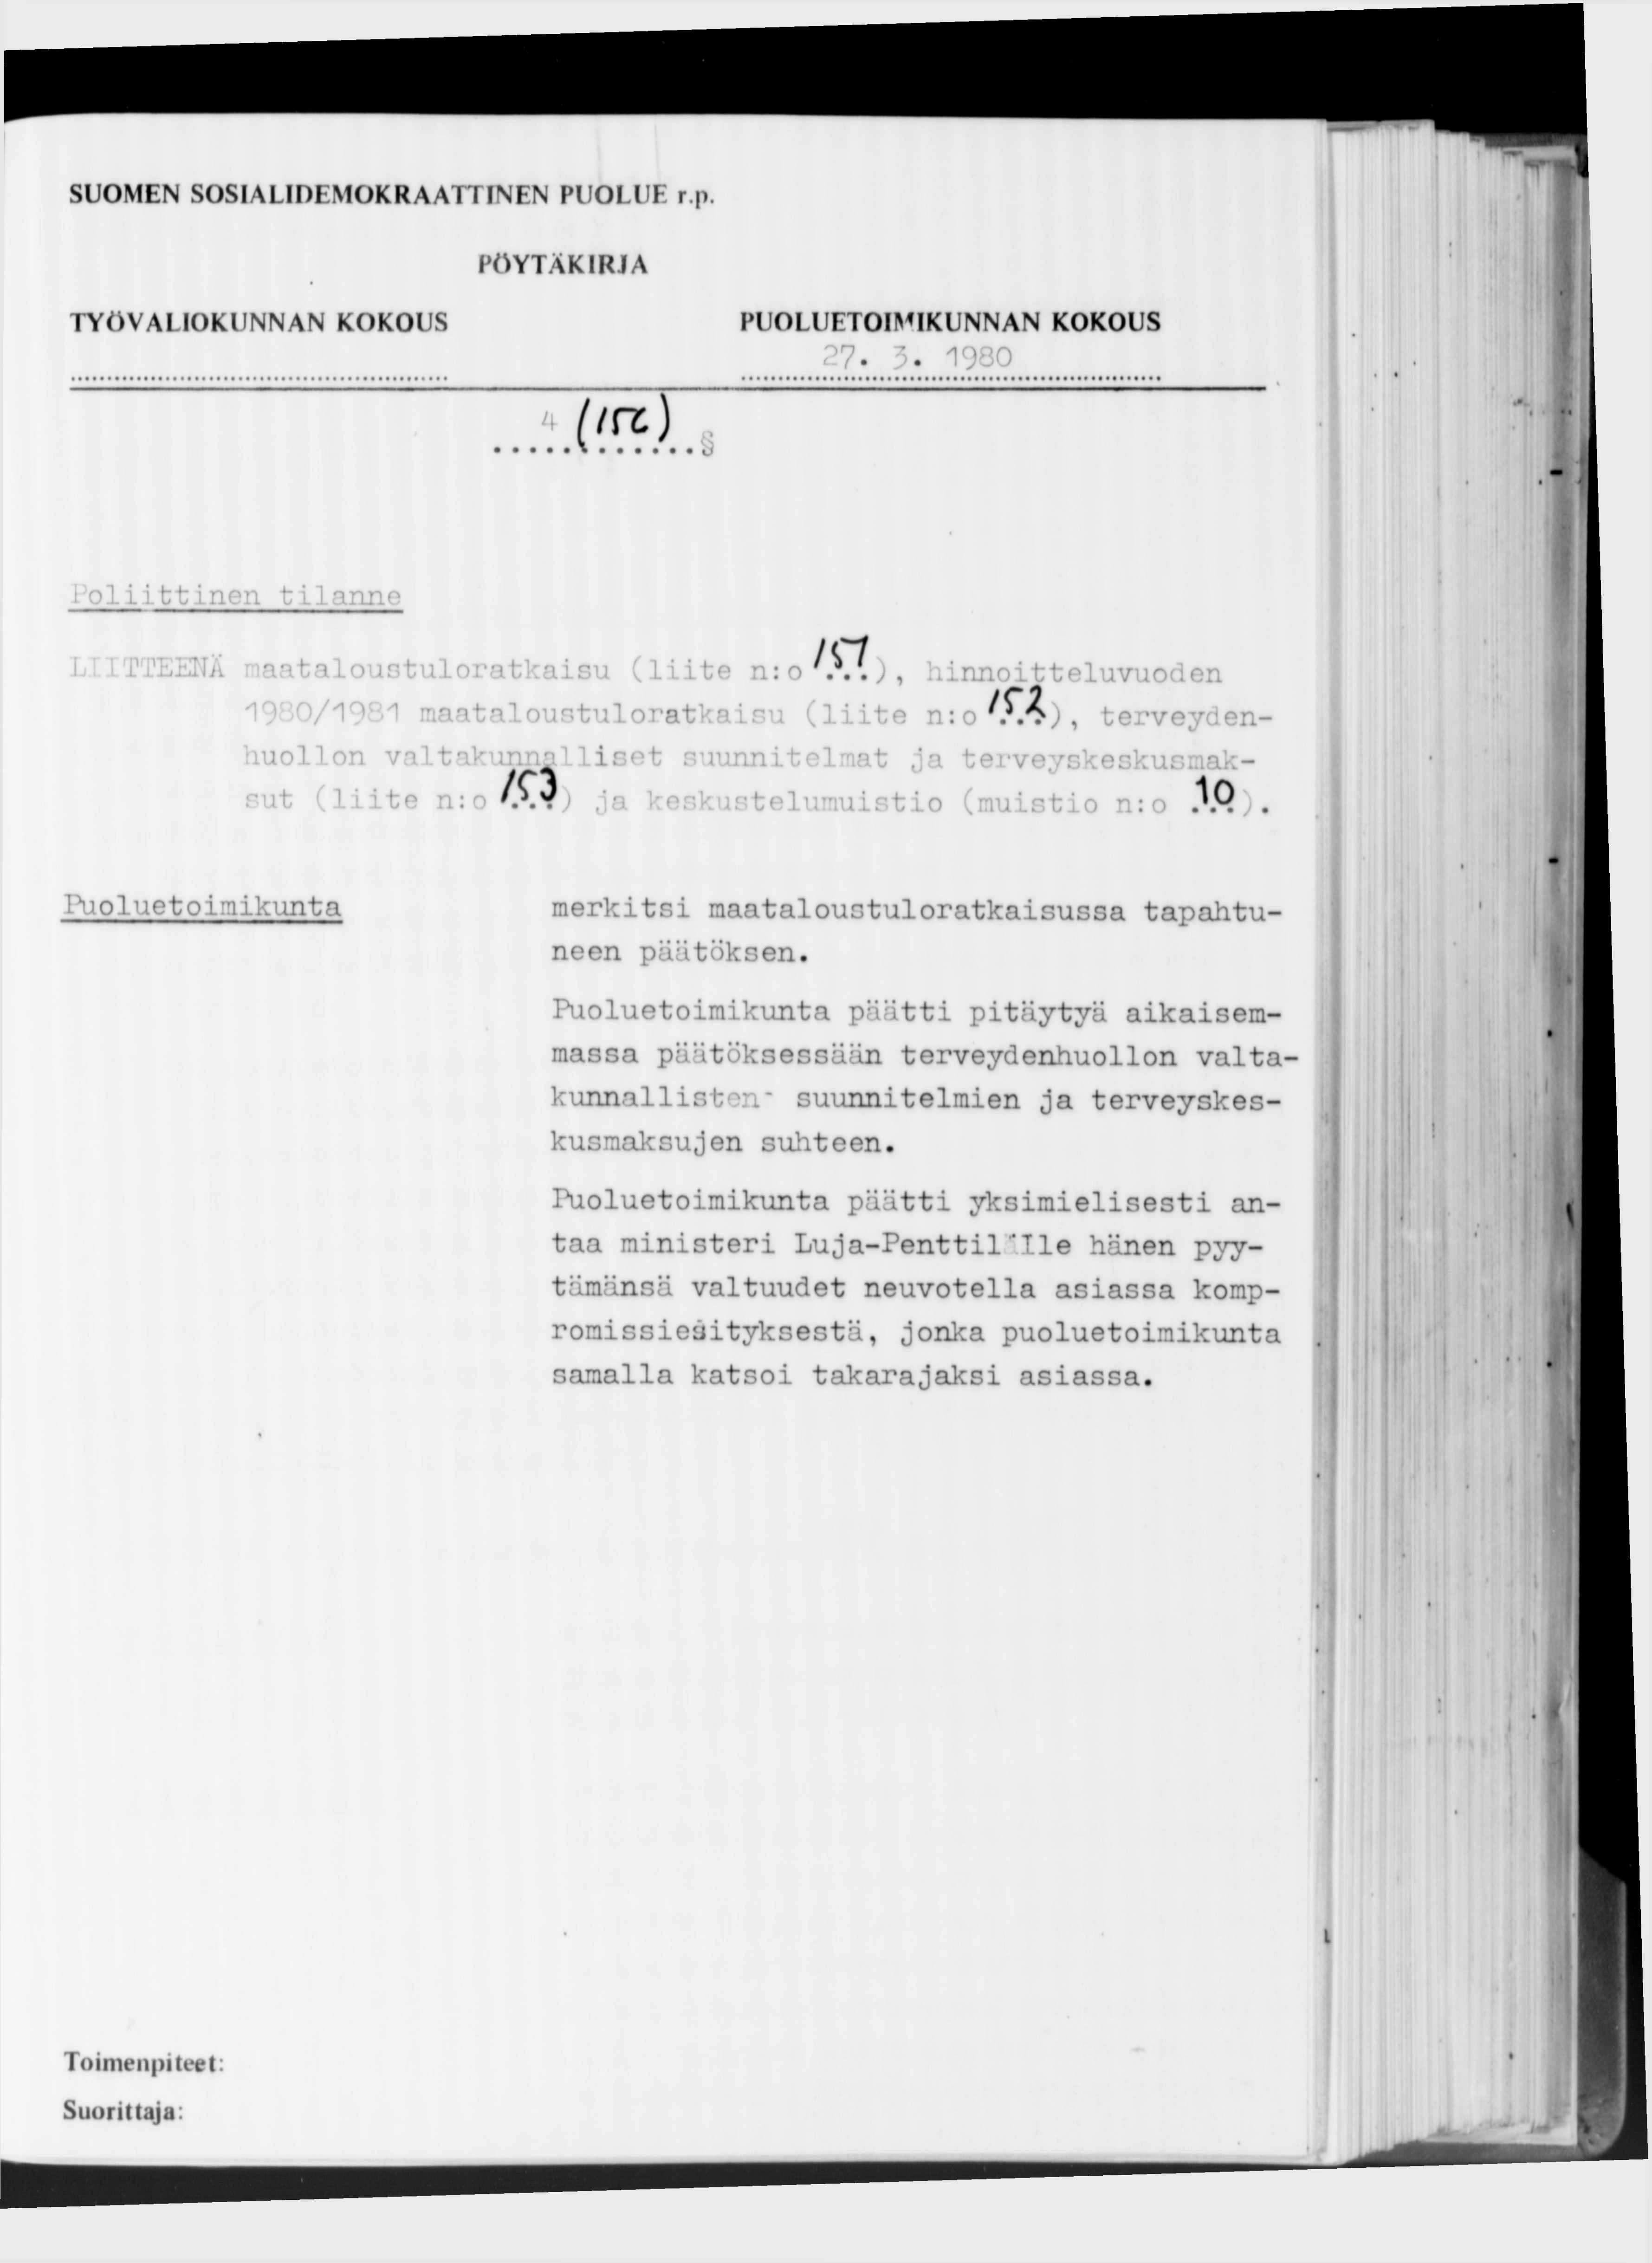 27. 3.1980 Poliittinen tilanne /С/ EENÄ maataloustuloratkaisu.